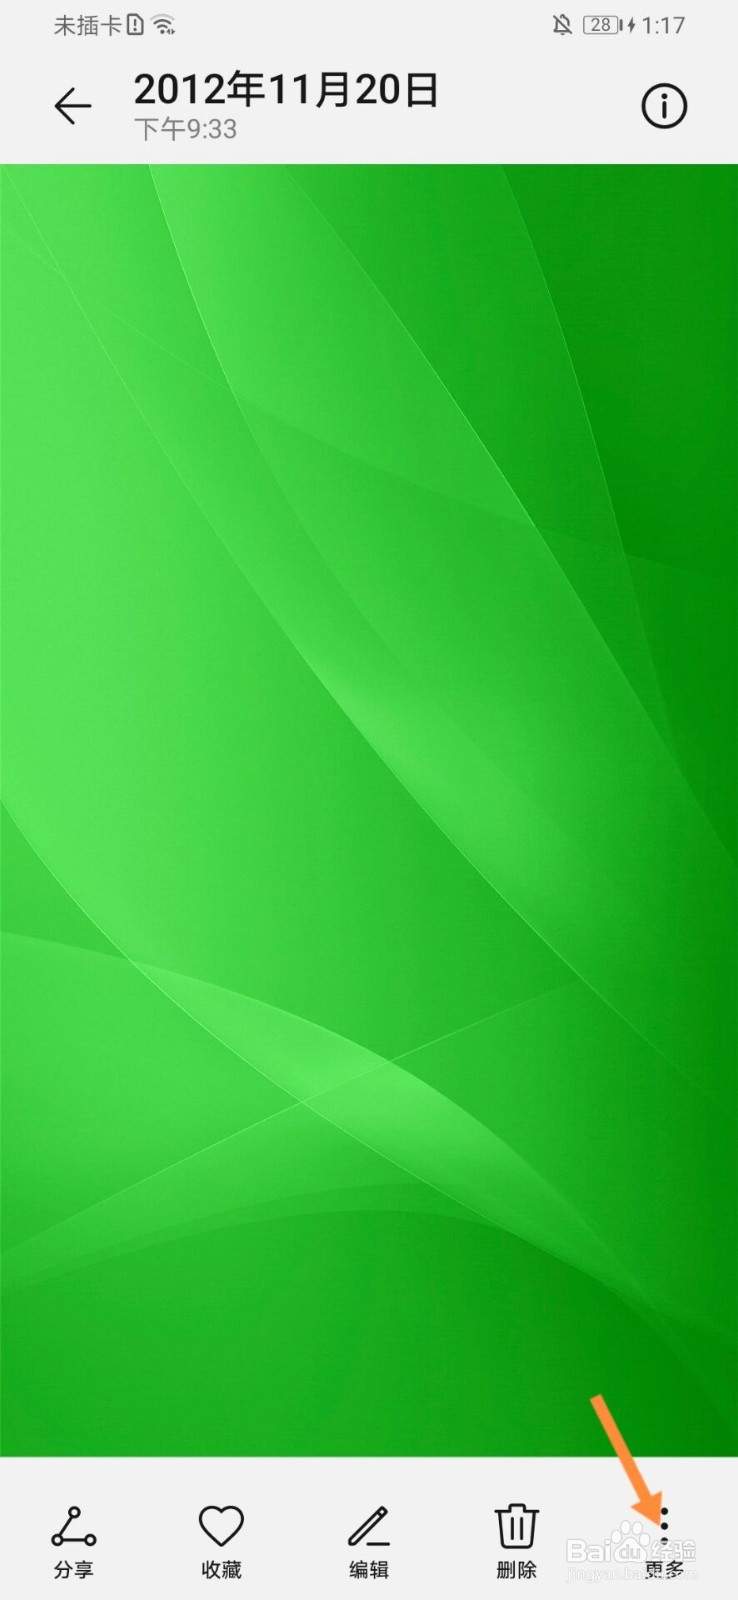 纯绿色全屏 背景图图片